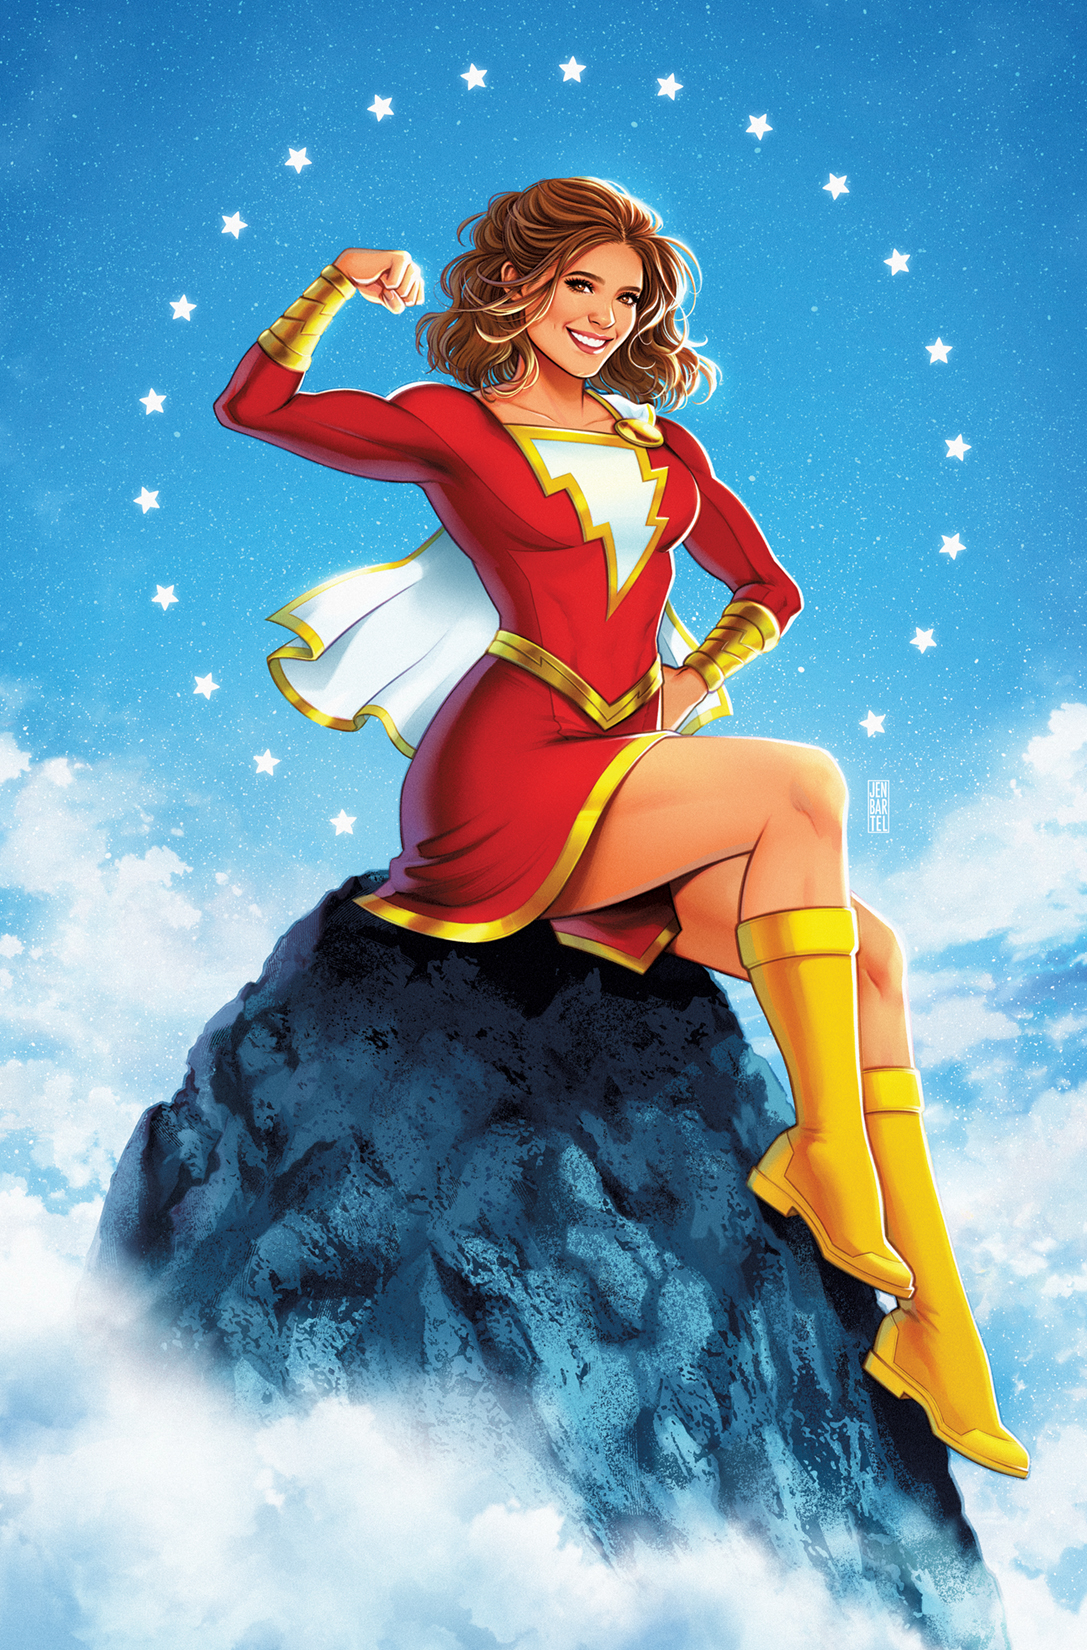 DC Brasil on X: A Mary Marvel está tão linda em Shazam Fury Of